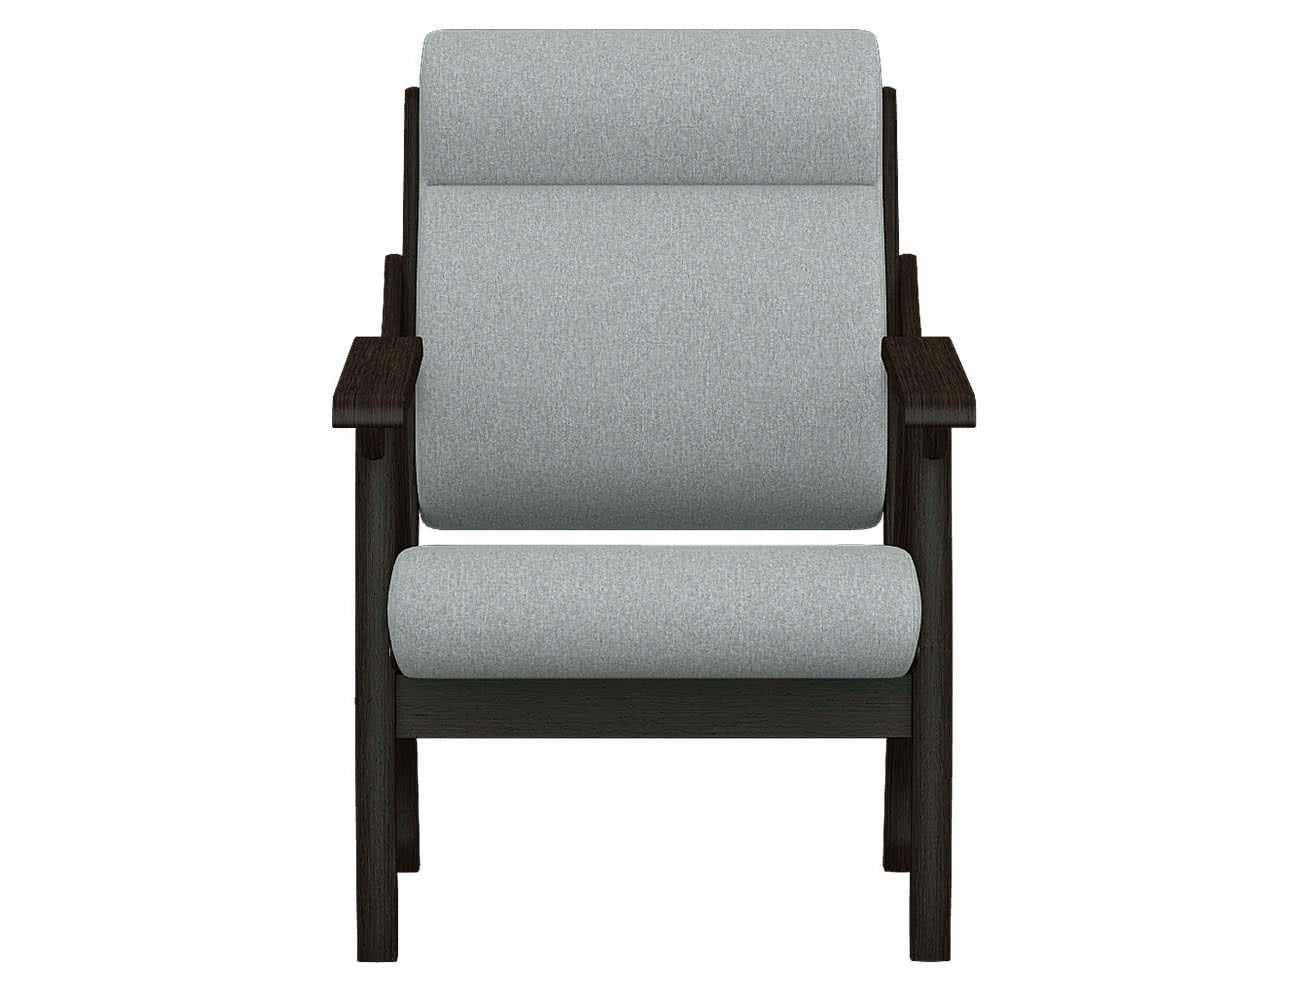 Купить кресло Мебелик Кресло Мебелик Вега 10 Серый/ Венге, венге венге дешево на официальном сайте